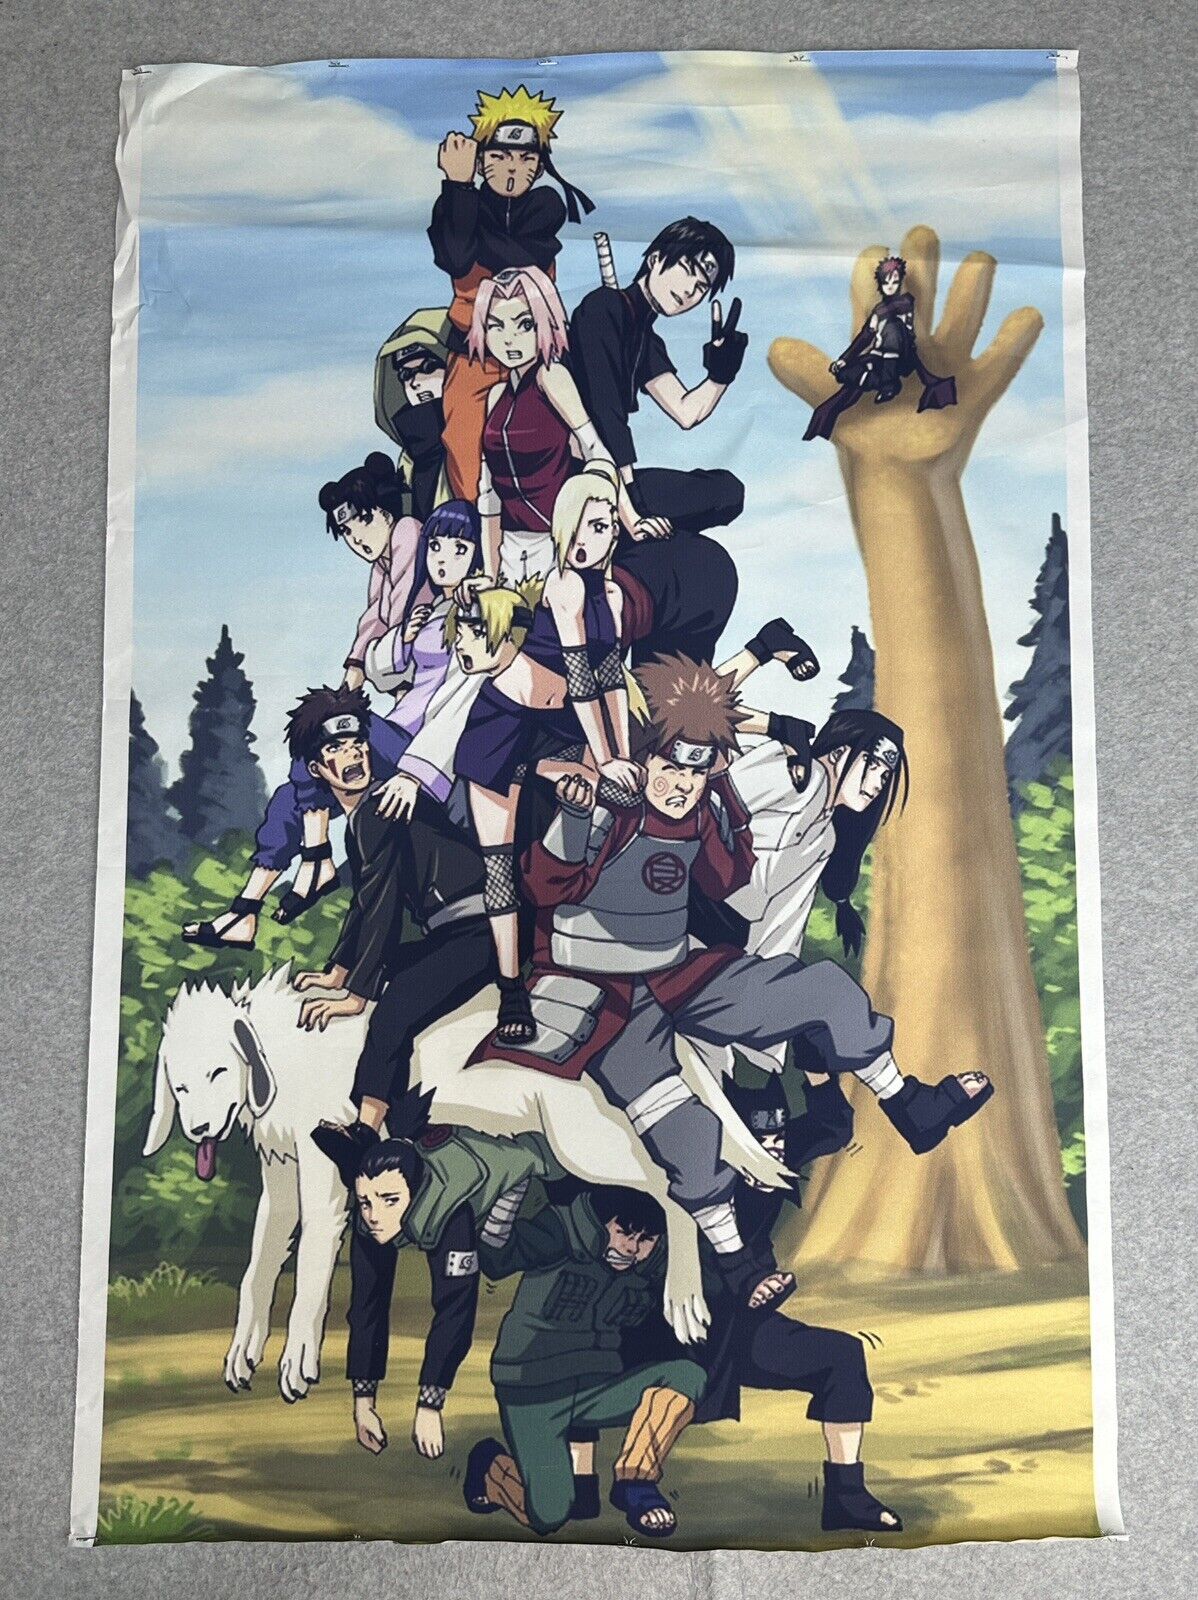 Naruto Shippuden Anime Wall Scroll Poster 35x23.5 Sakura Sasuke Hinata Gaara